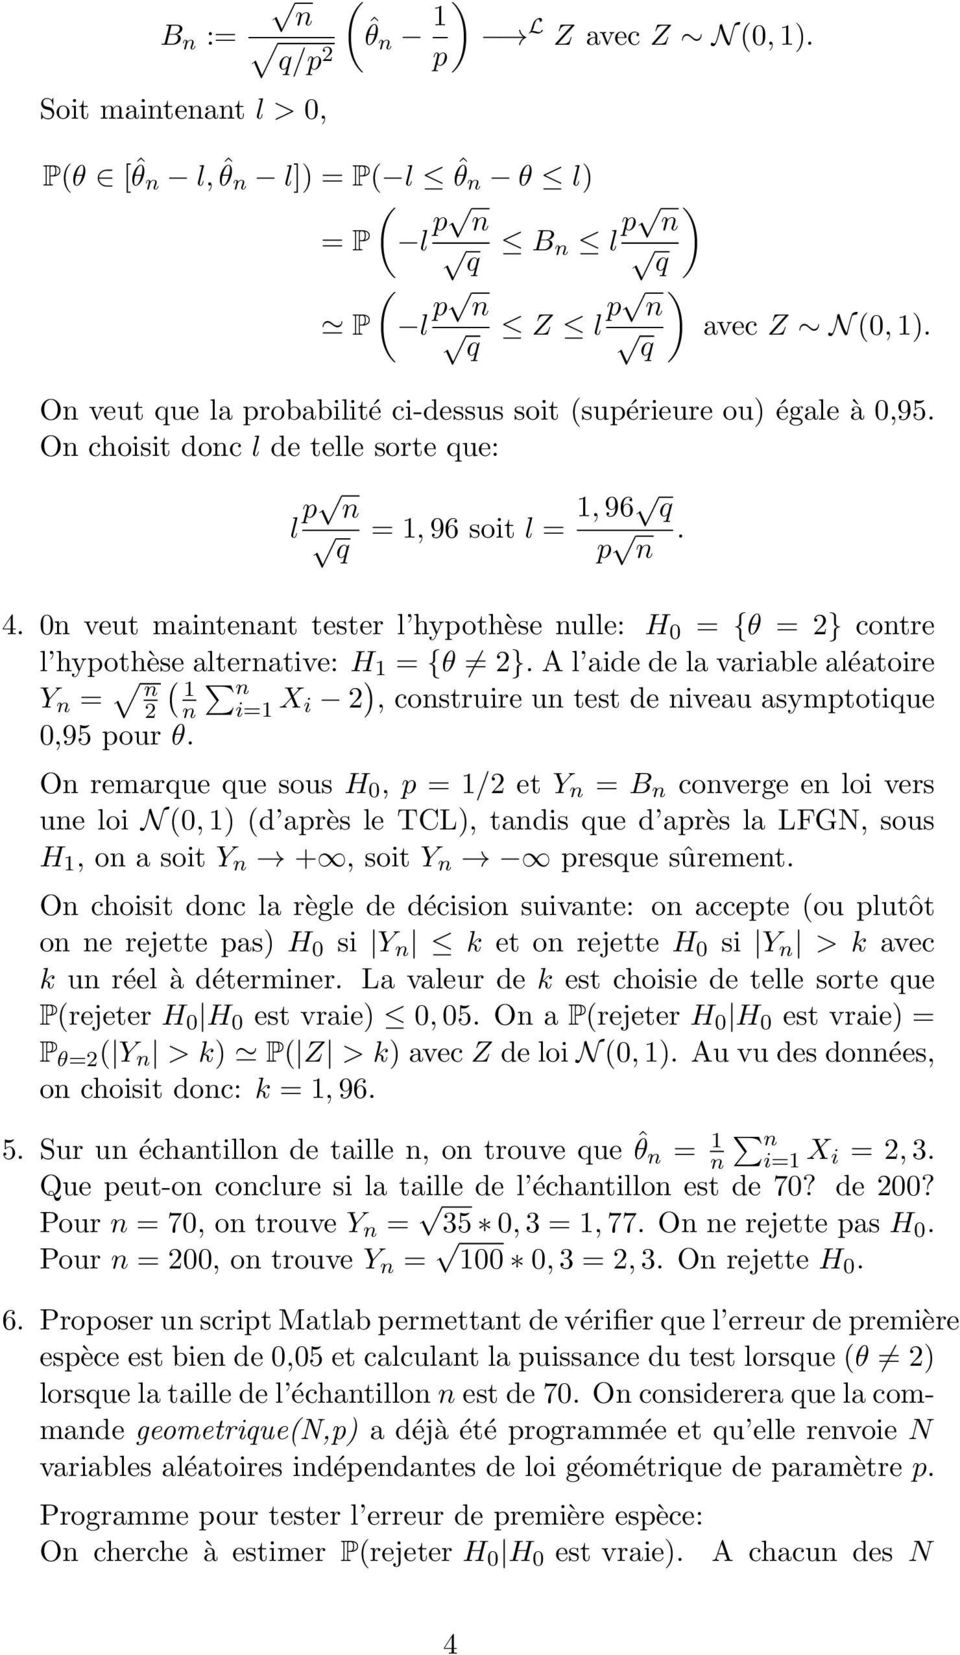 0 veut maiteat tester l hypothèse ulle: H 0 {θ } cotre l hypothèse alterative: H {θ }. A l aide de la variable aléatoire Y ( i X i ), costruire u test de iveau asymptotique 0,95 pour θ.